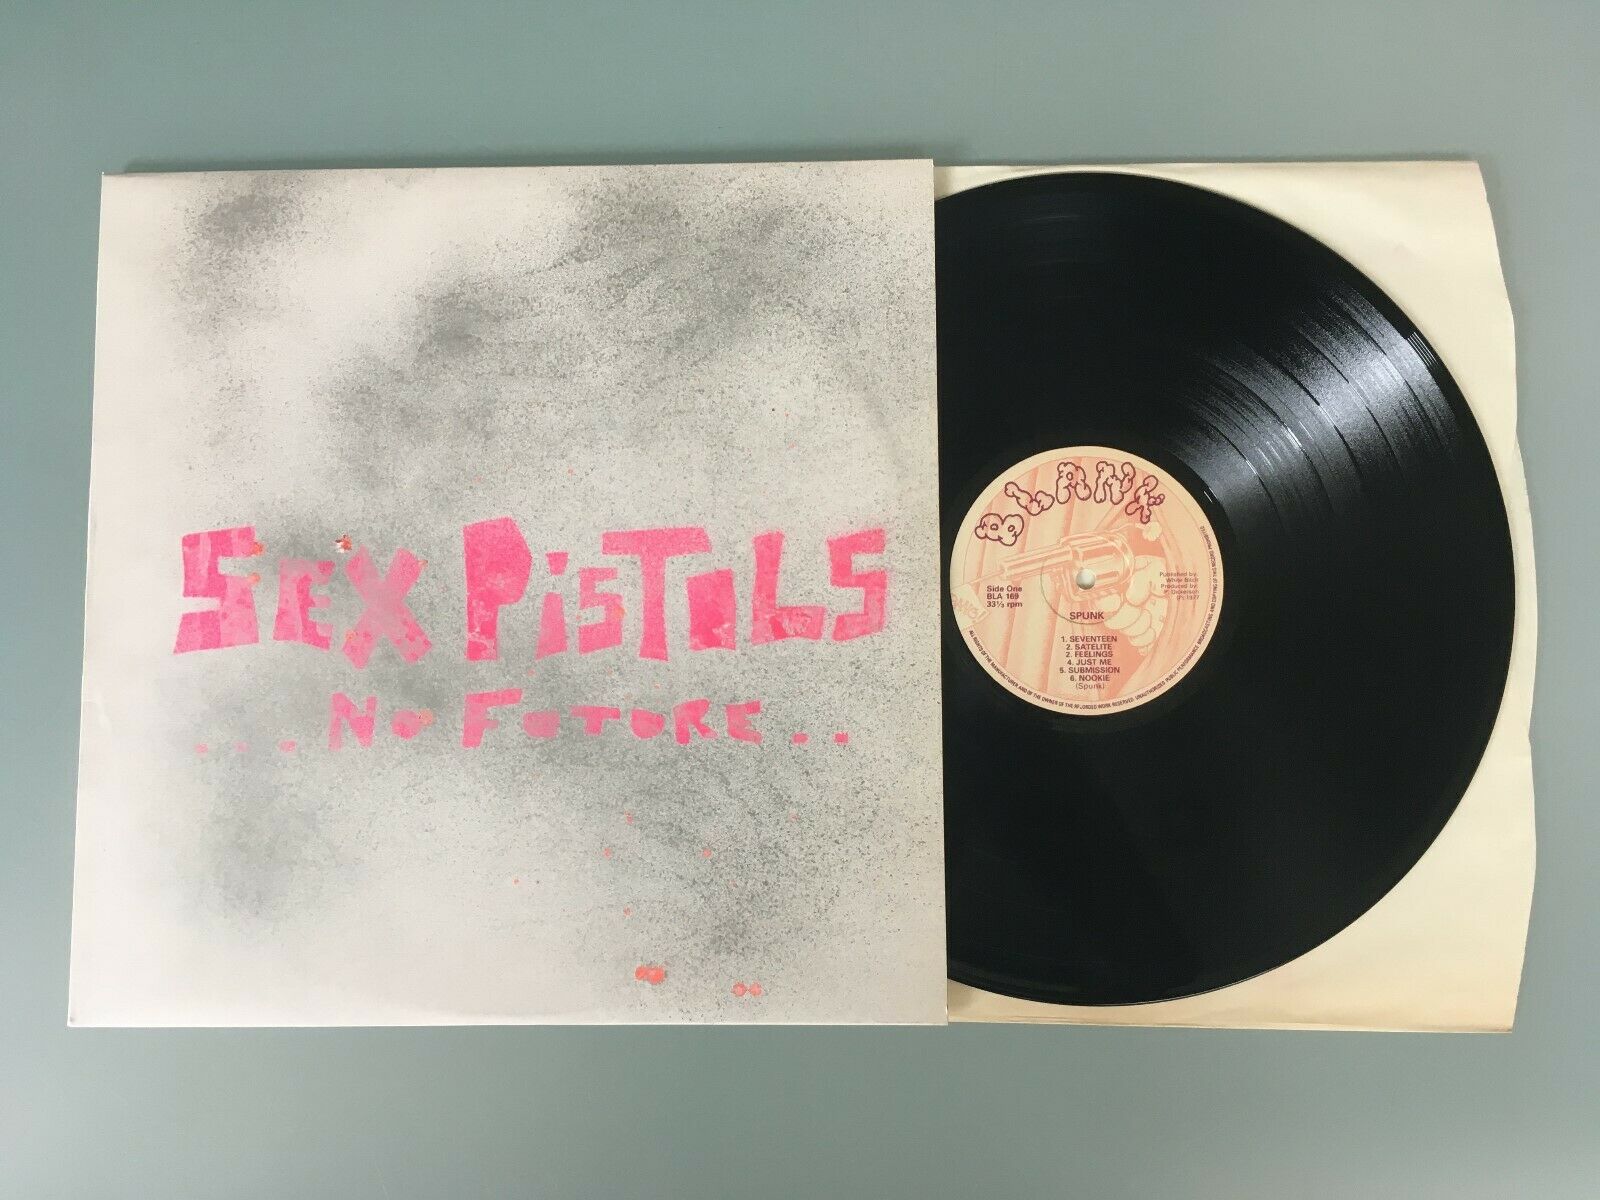 popsike.com - Sex Pistols 'SPUNK' No Future Original 1977 Bootleg 